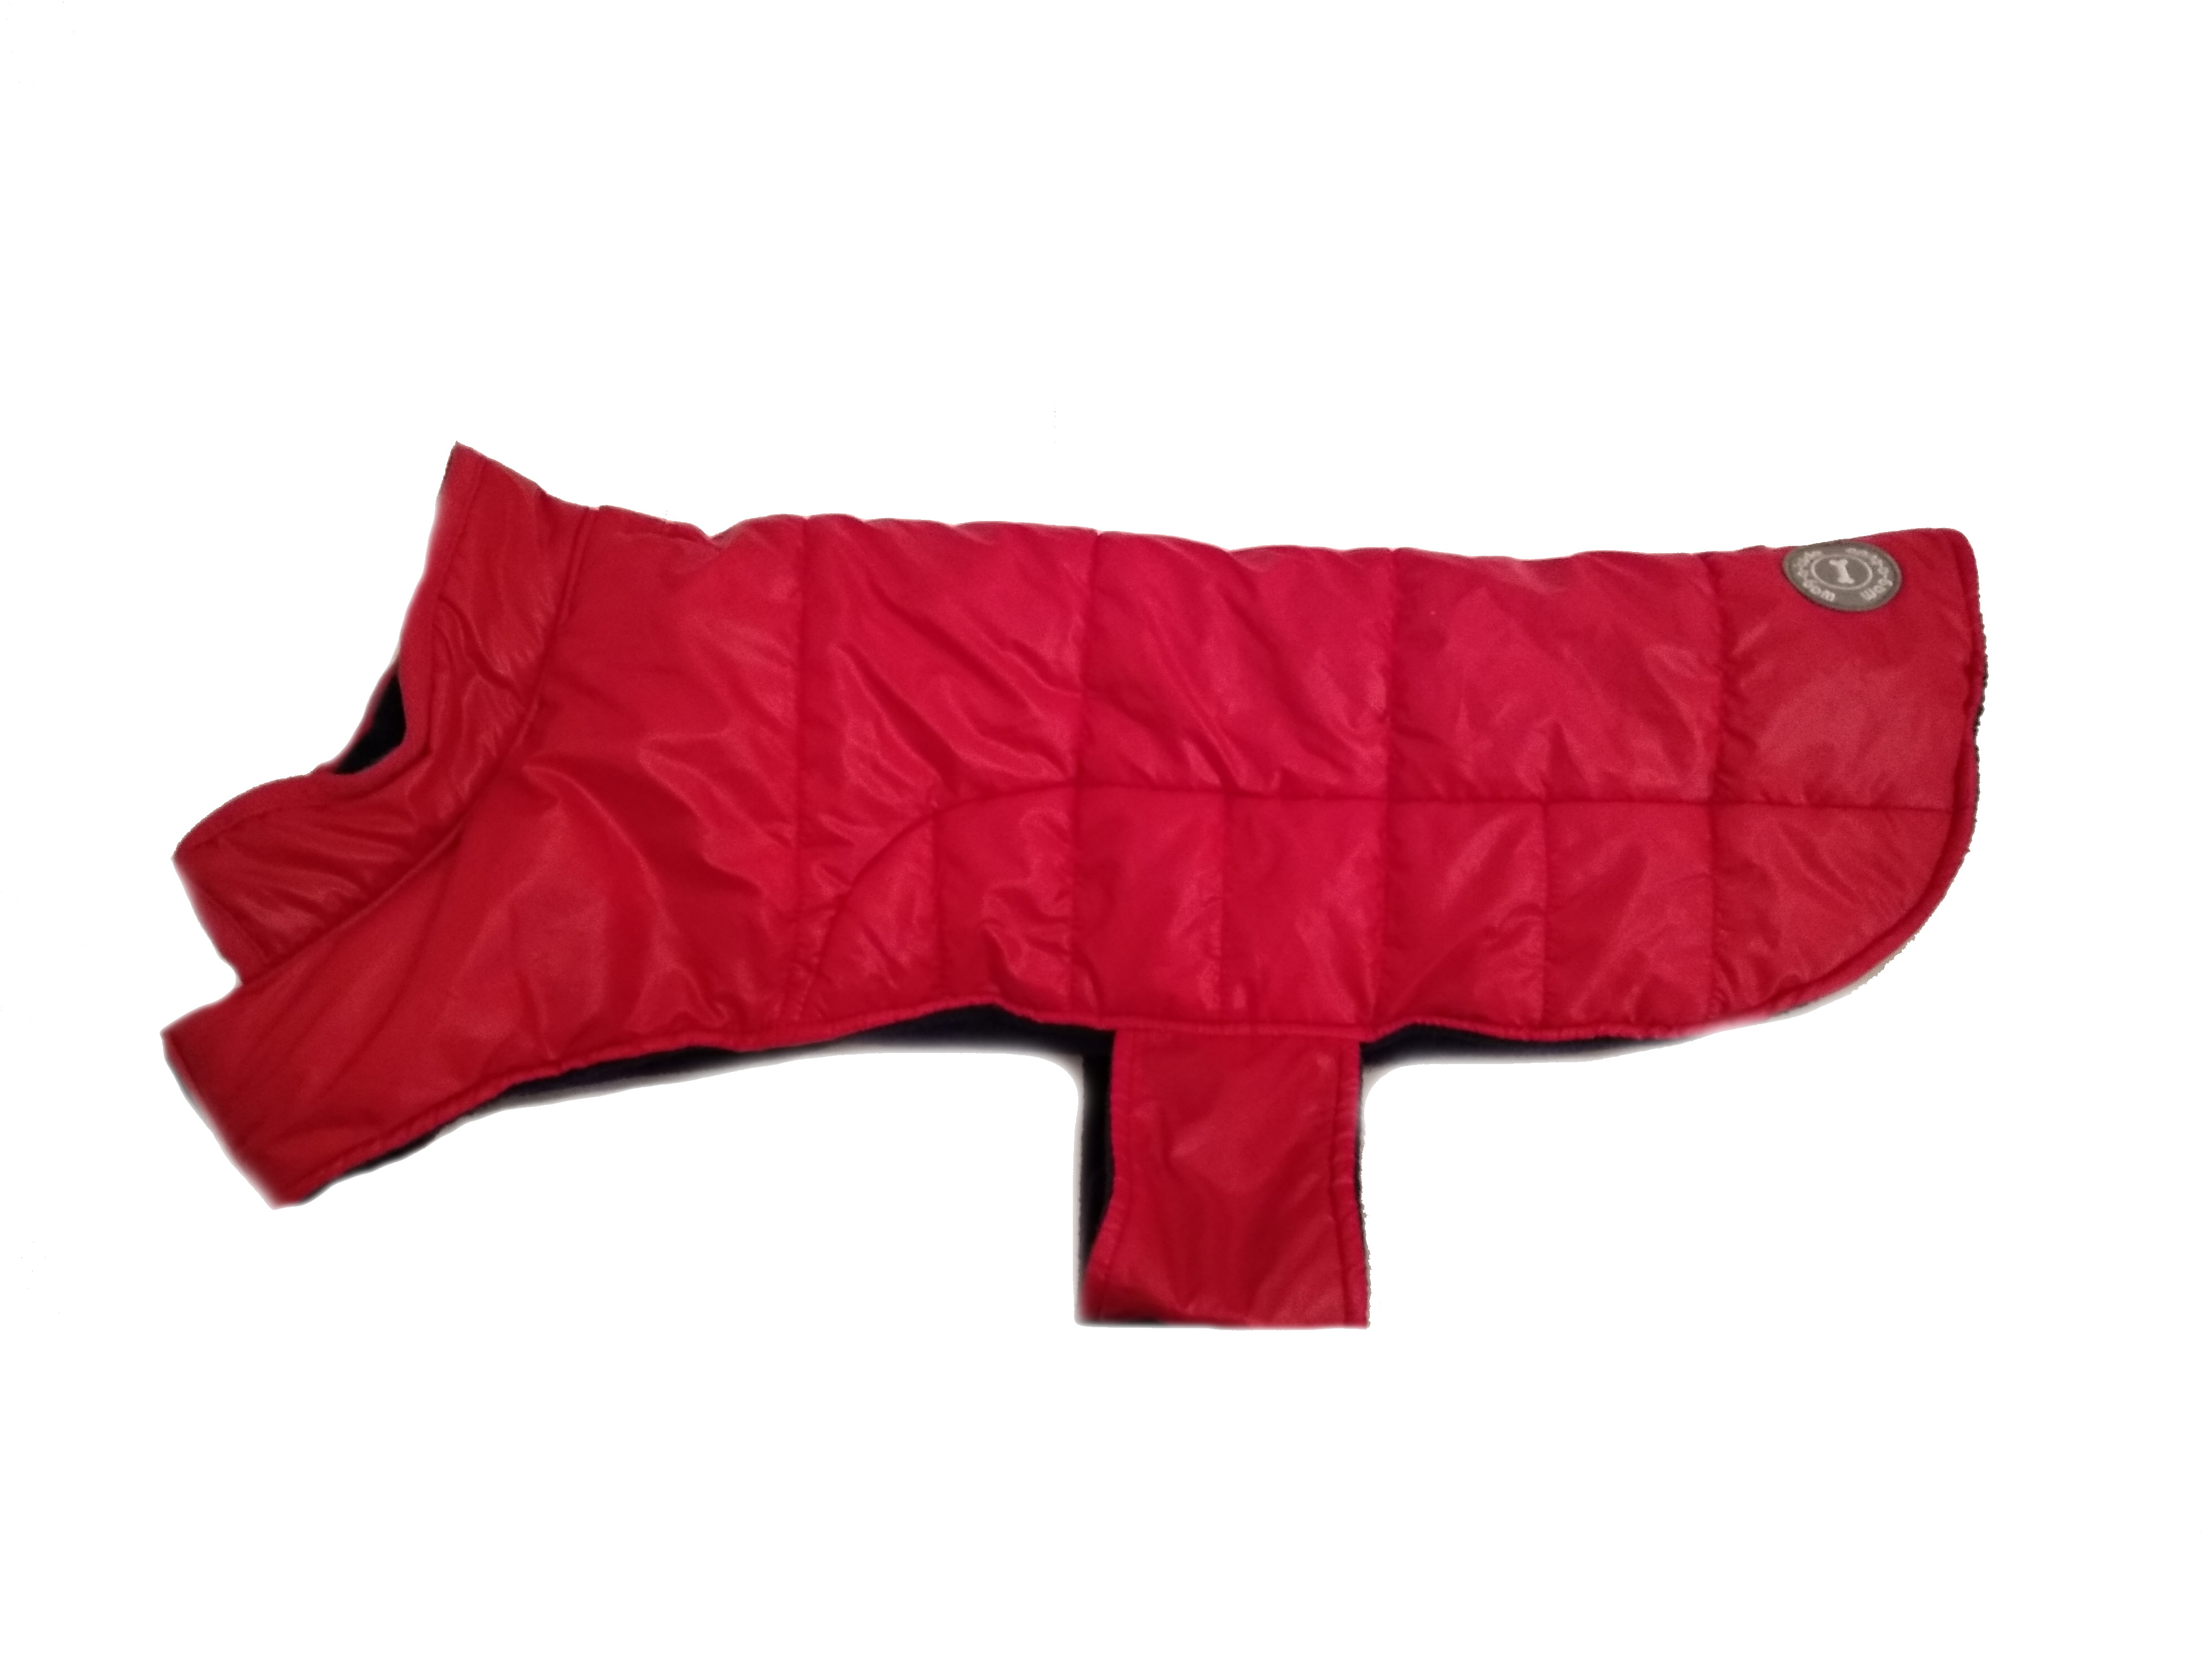 WAG-A-TUDE piros kutyaruha, hátvédő. Háthossz 48 cm. 